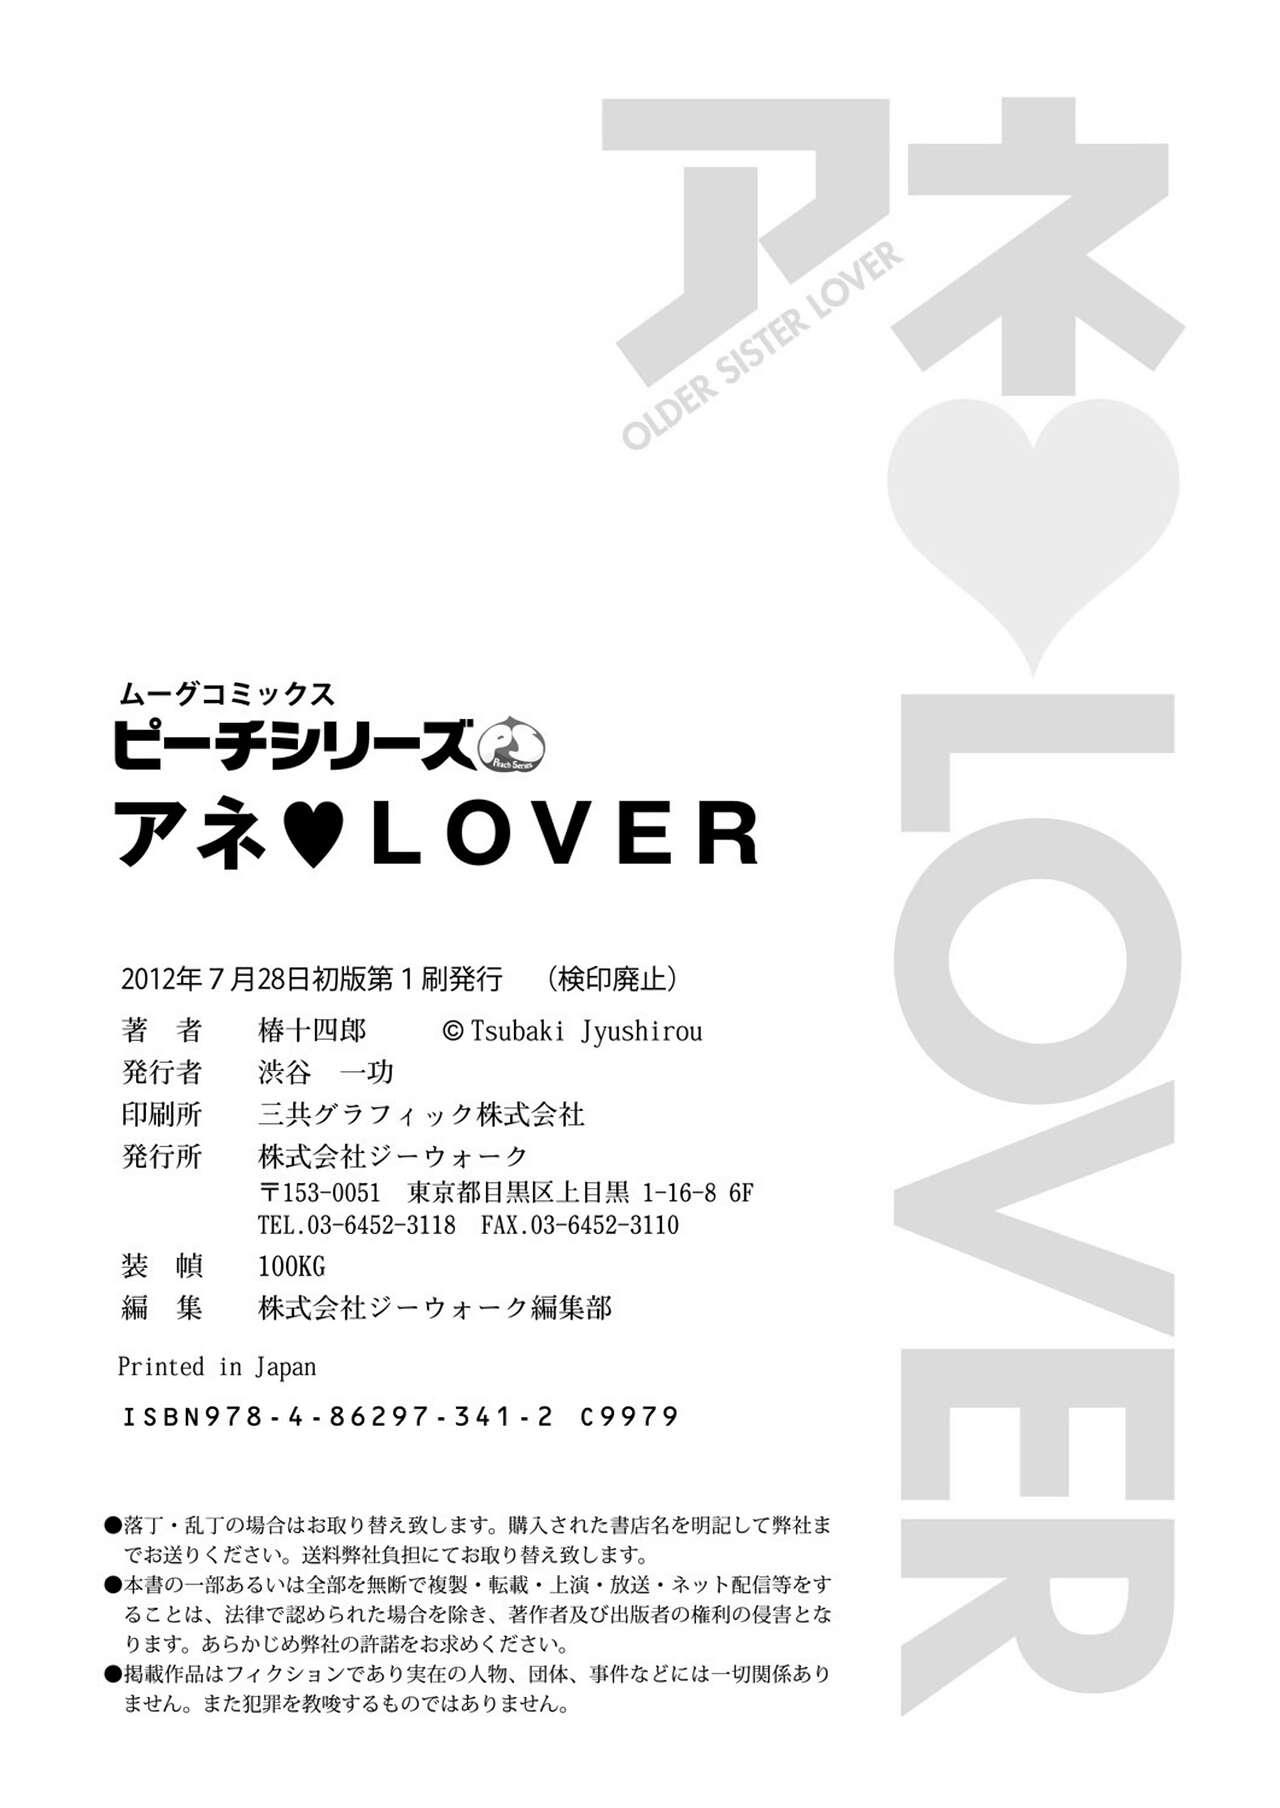 Ane♥LOVER - Older Sister Lover 162